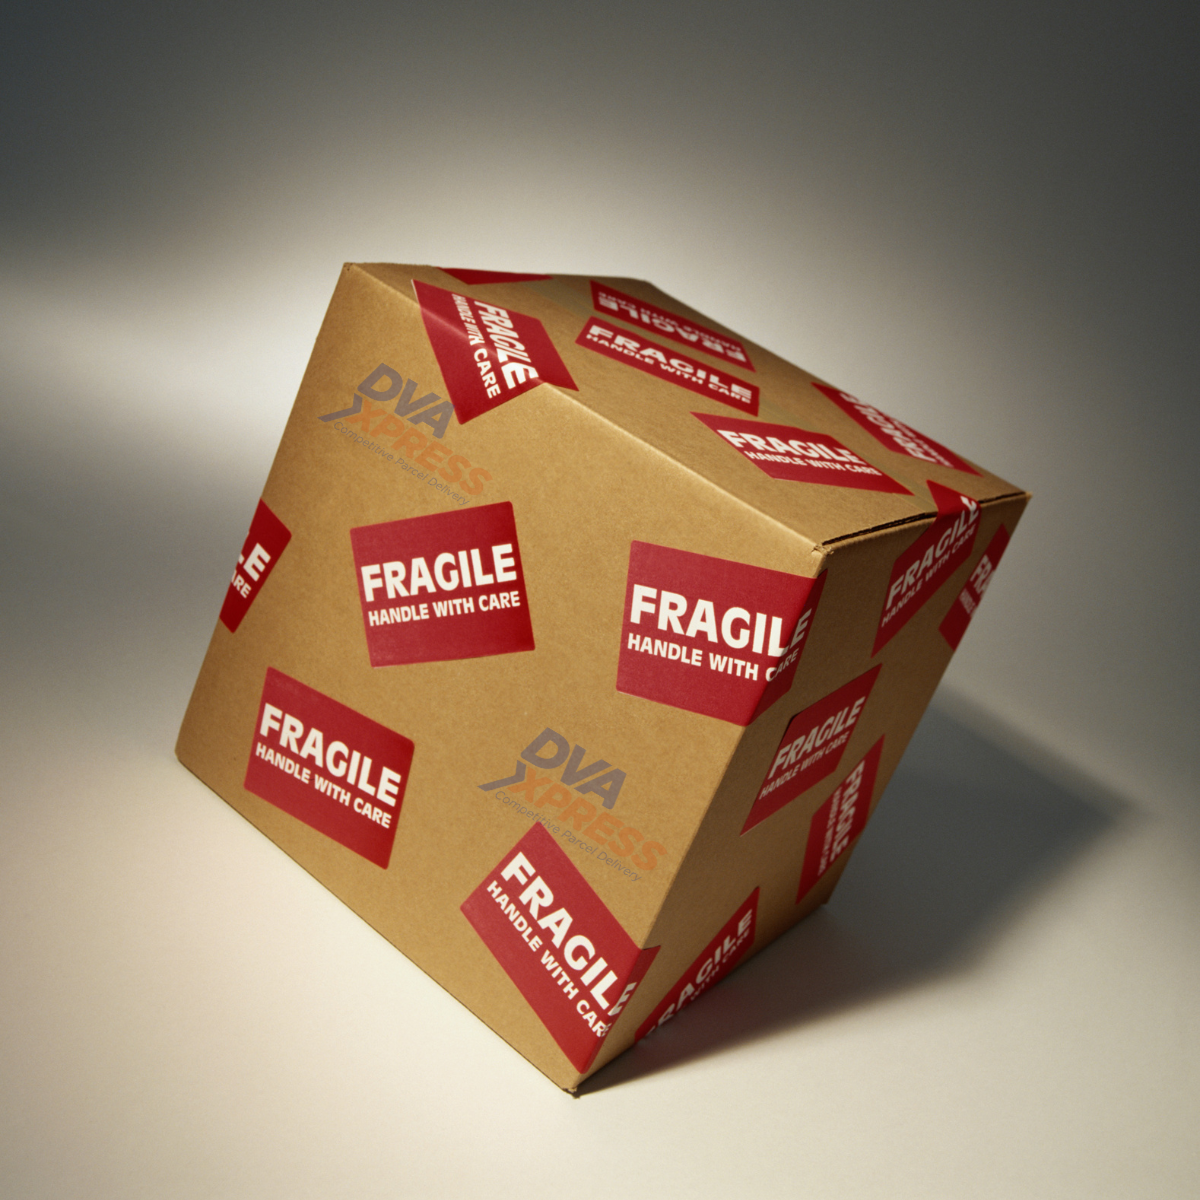 Il giusto imballaggio è essenziale affinché i beni fragili arrivino a destinazione integri.